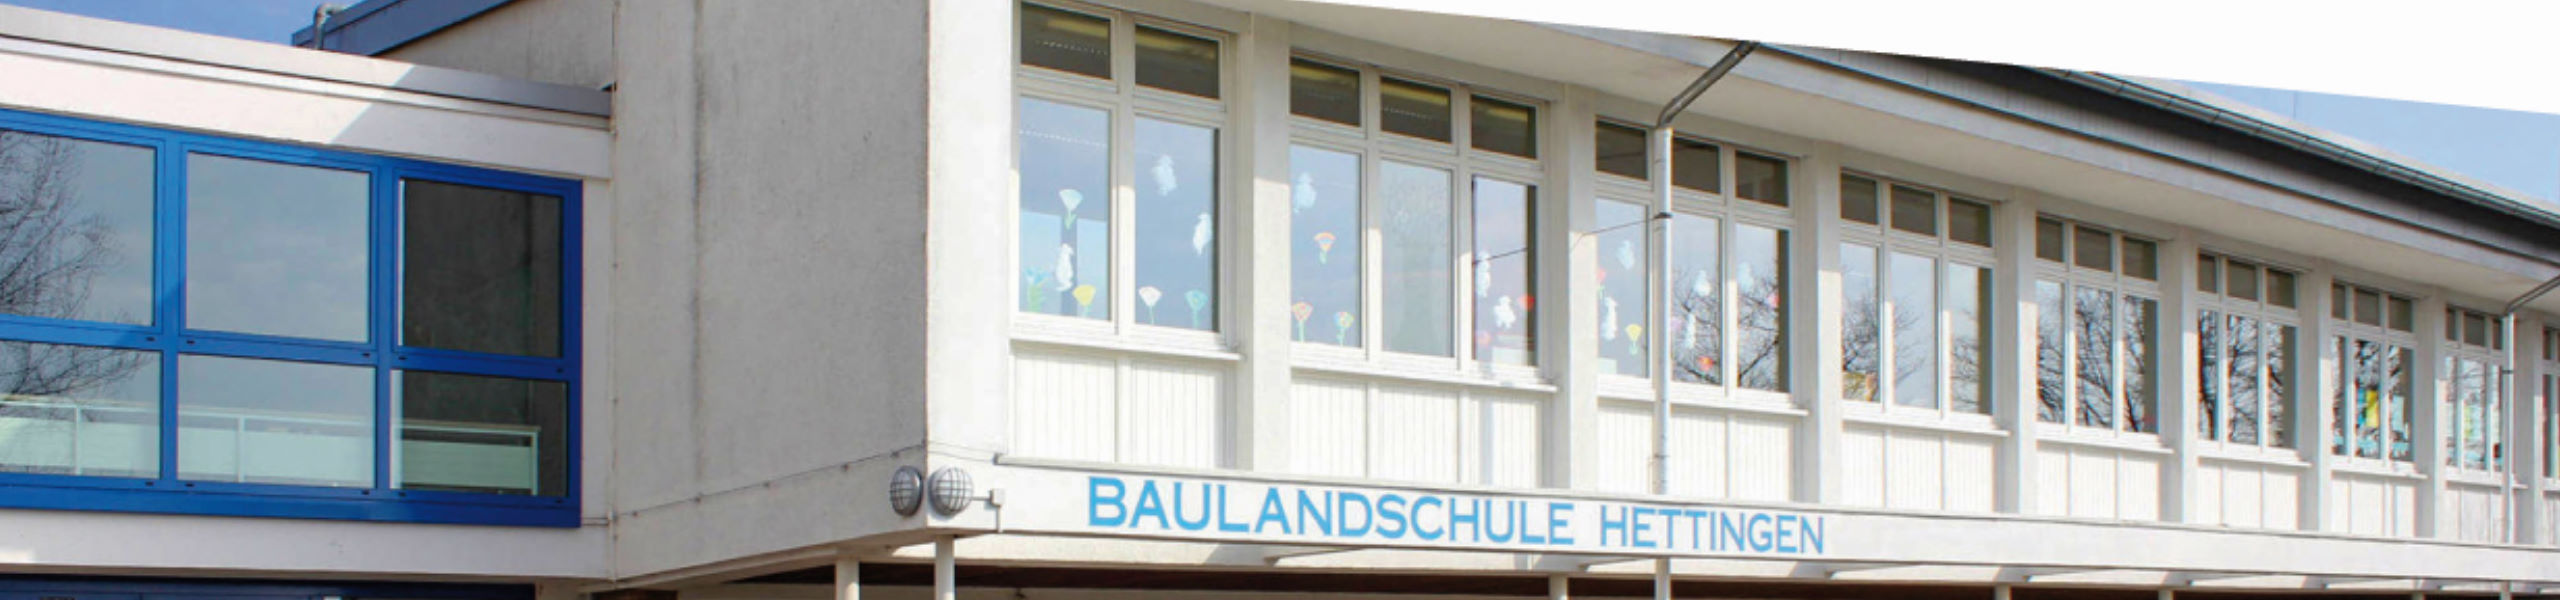 Baulandschule Hettingen - Arbeitsgemeinschaften / Schulchor